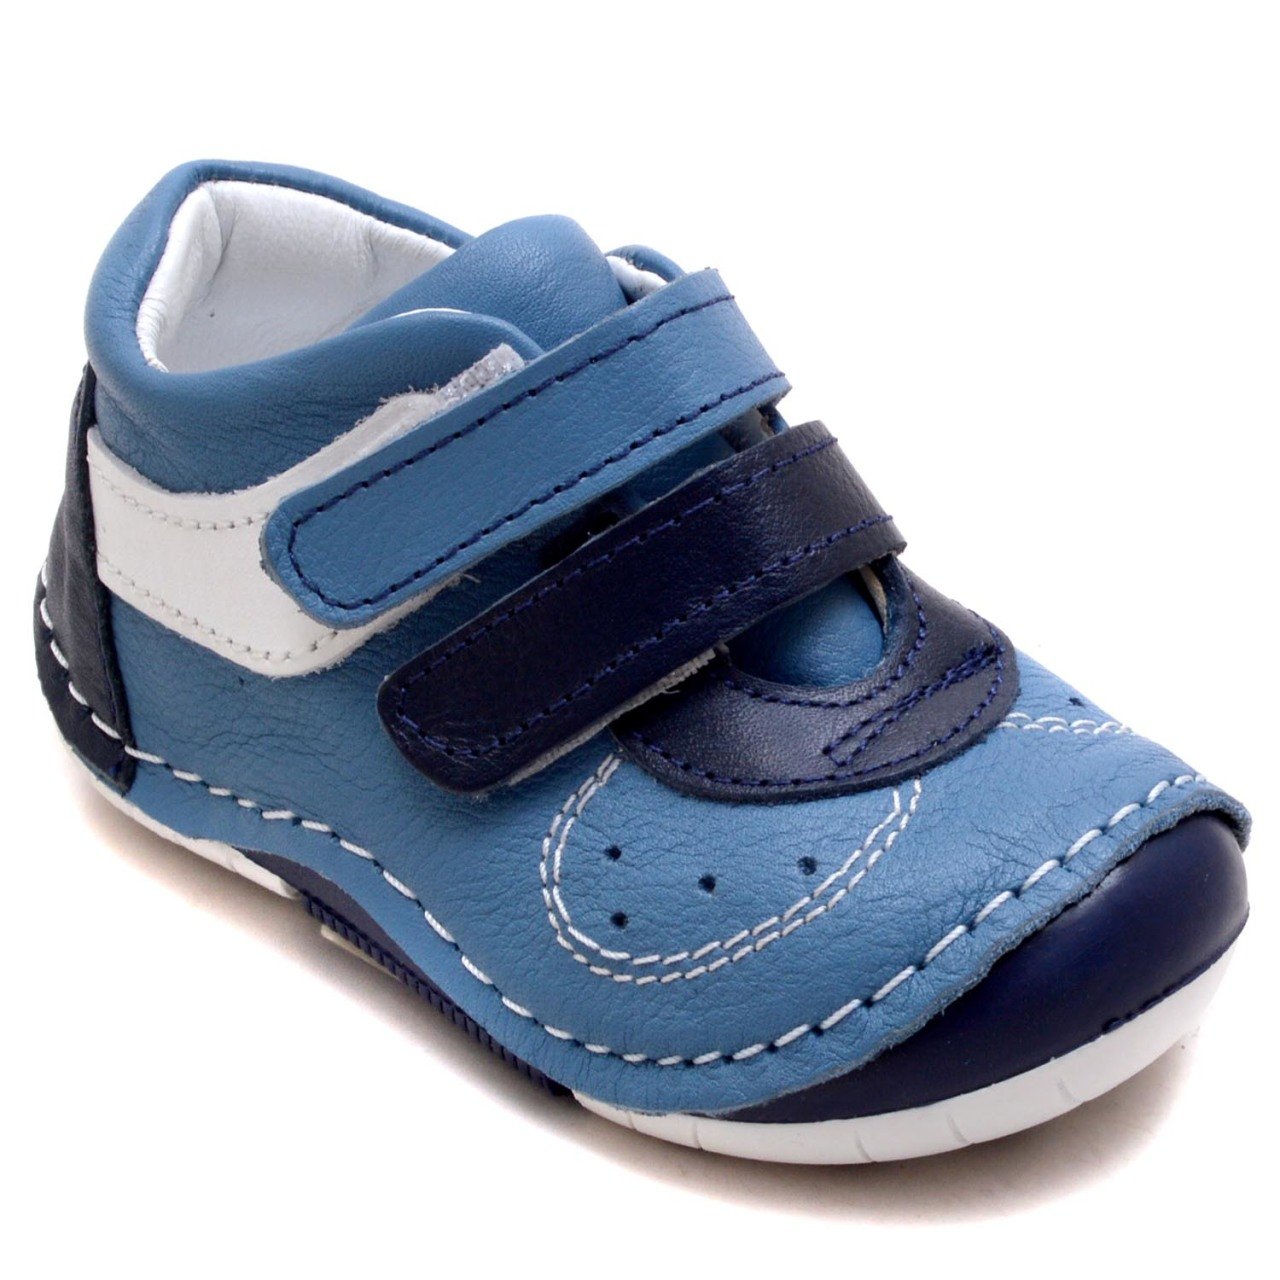 KL-345 Yeni Doğan Yürüyüş Ayakkabısı - Mavi(L) (Deri)